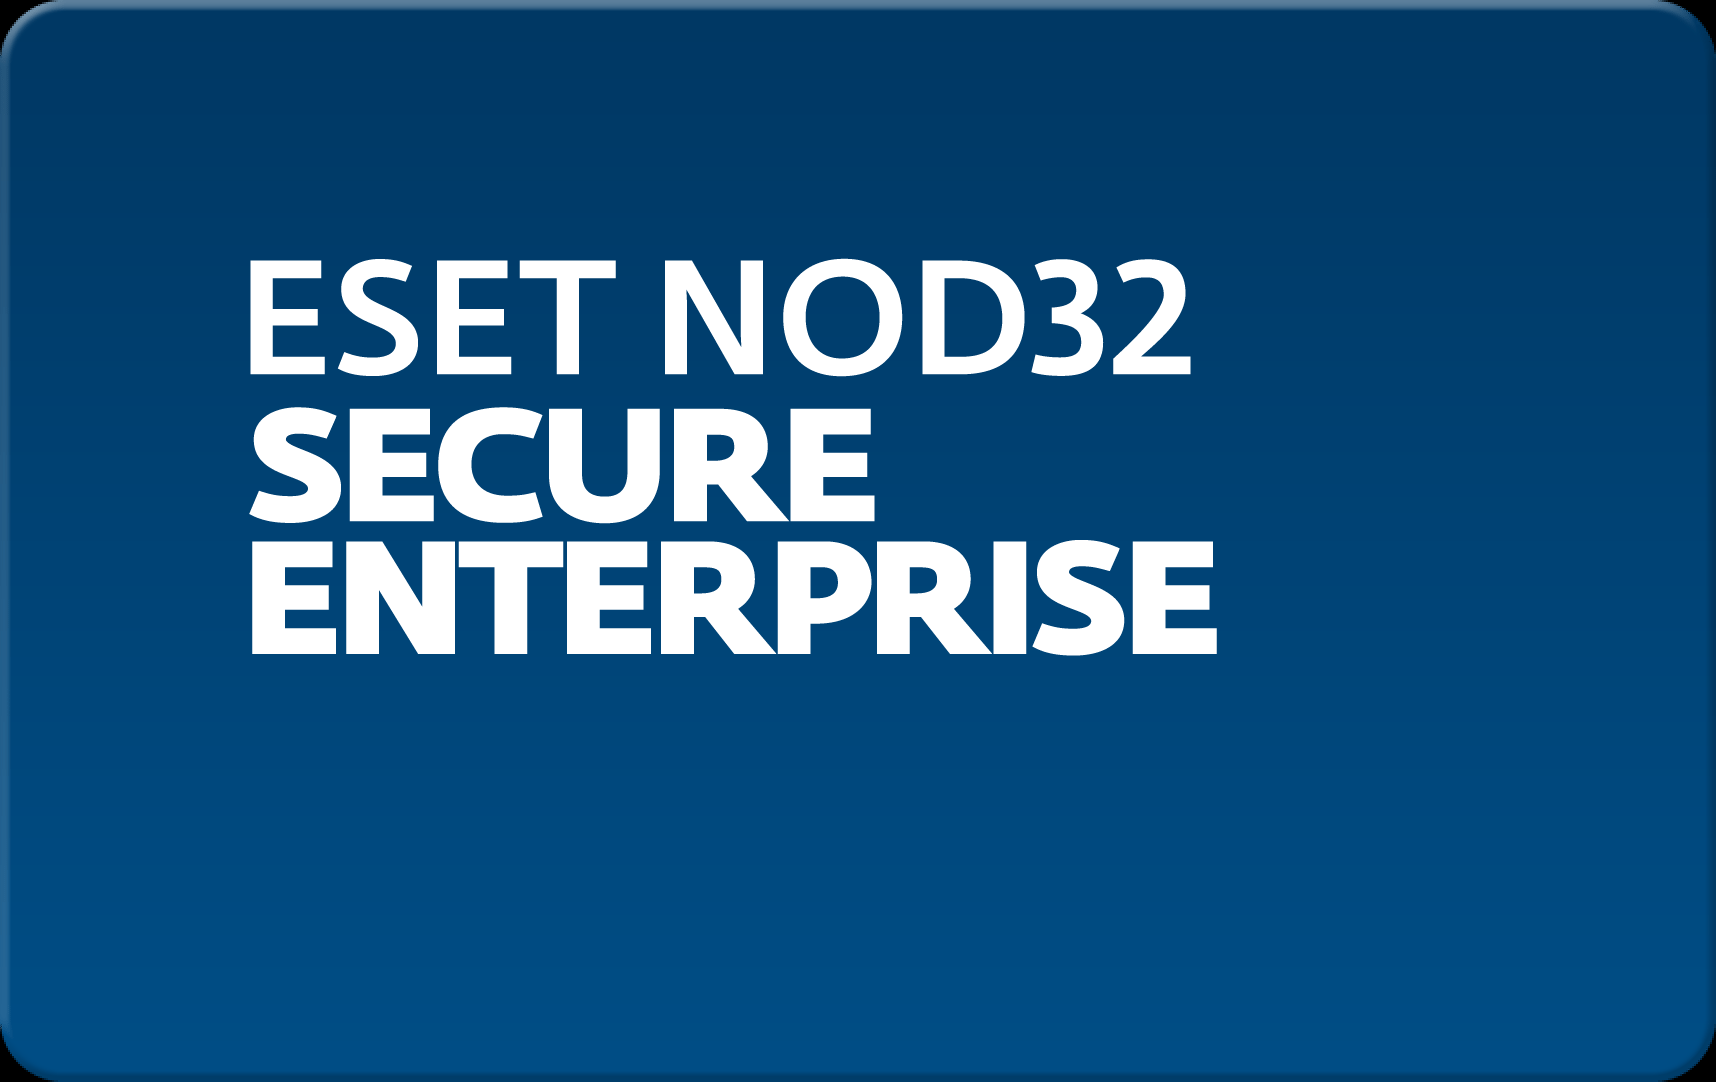        Eset NOD32 Secure Enterprise  157 